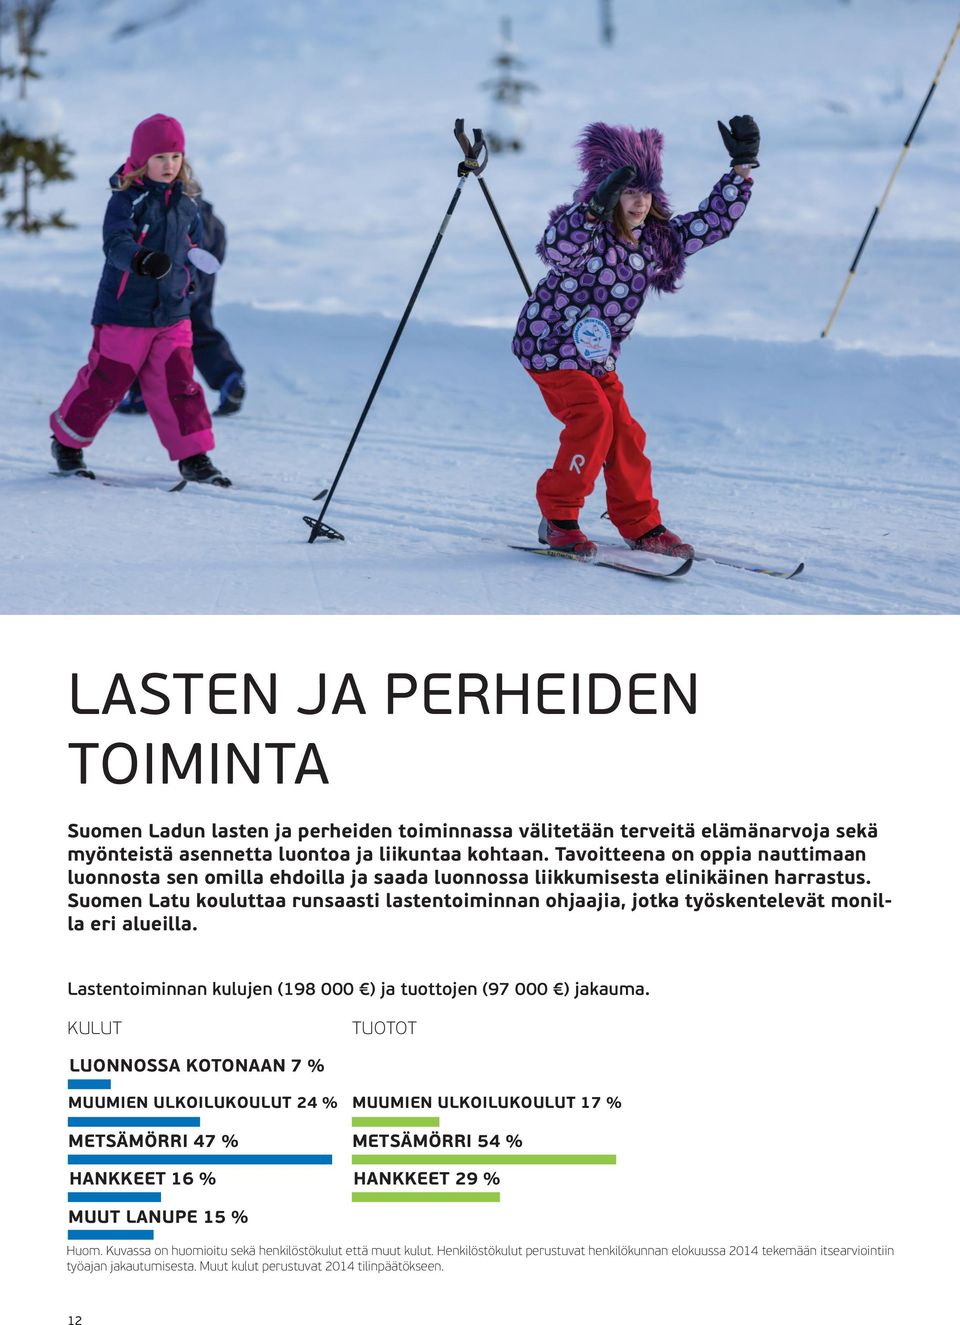 Suomen Latu kouluttaa runsaasti lastentoiminnan ohjaajia, jotka työskentelevät monilla eri alueilla. Lastentoiminnan kulujen (198 000 ) ja tuottojen (97 000 ) jakauma.